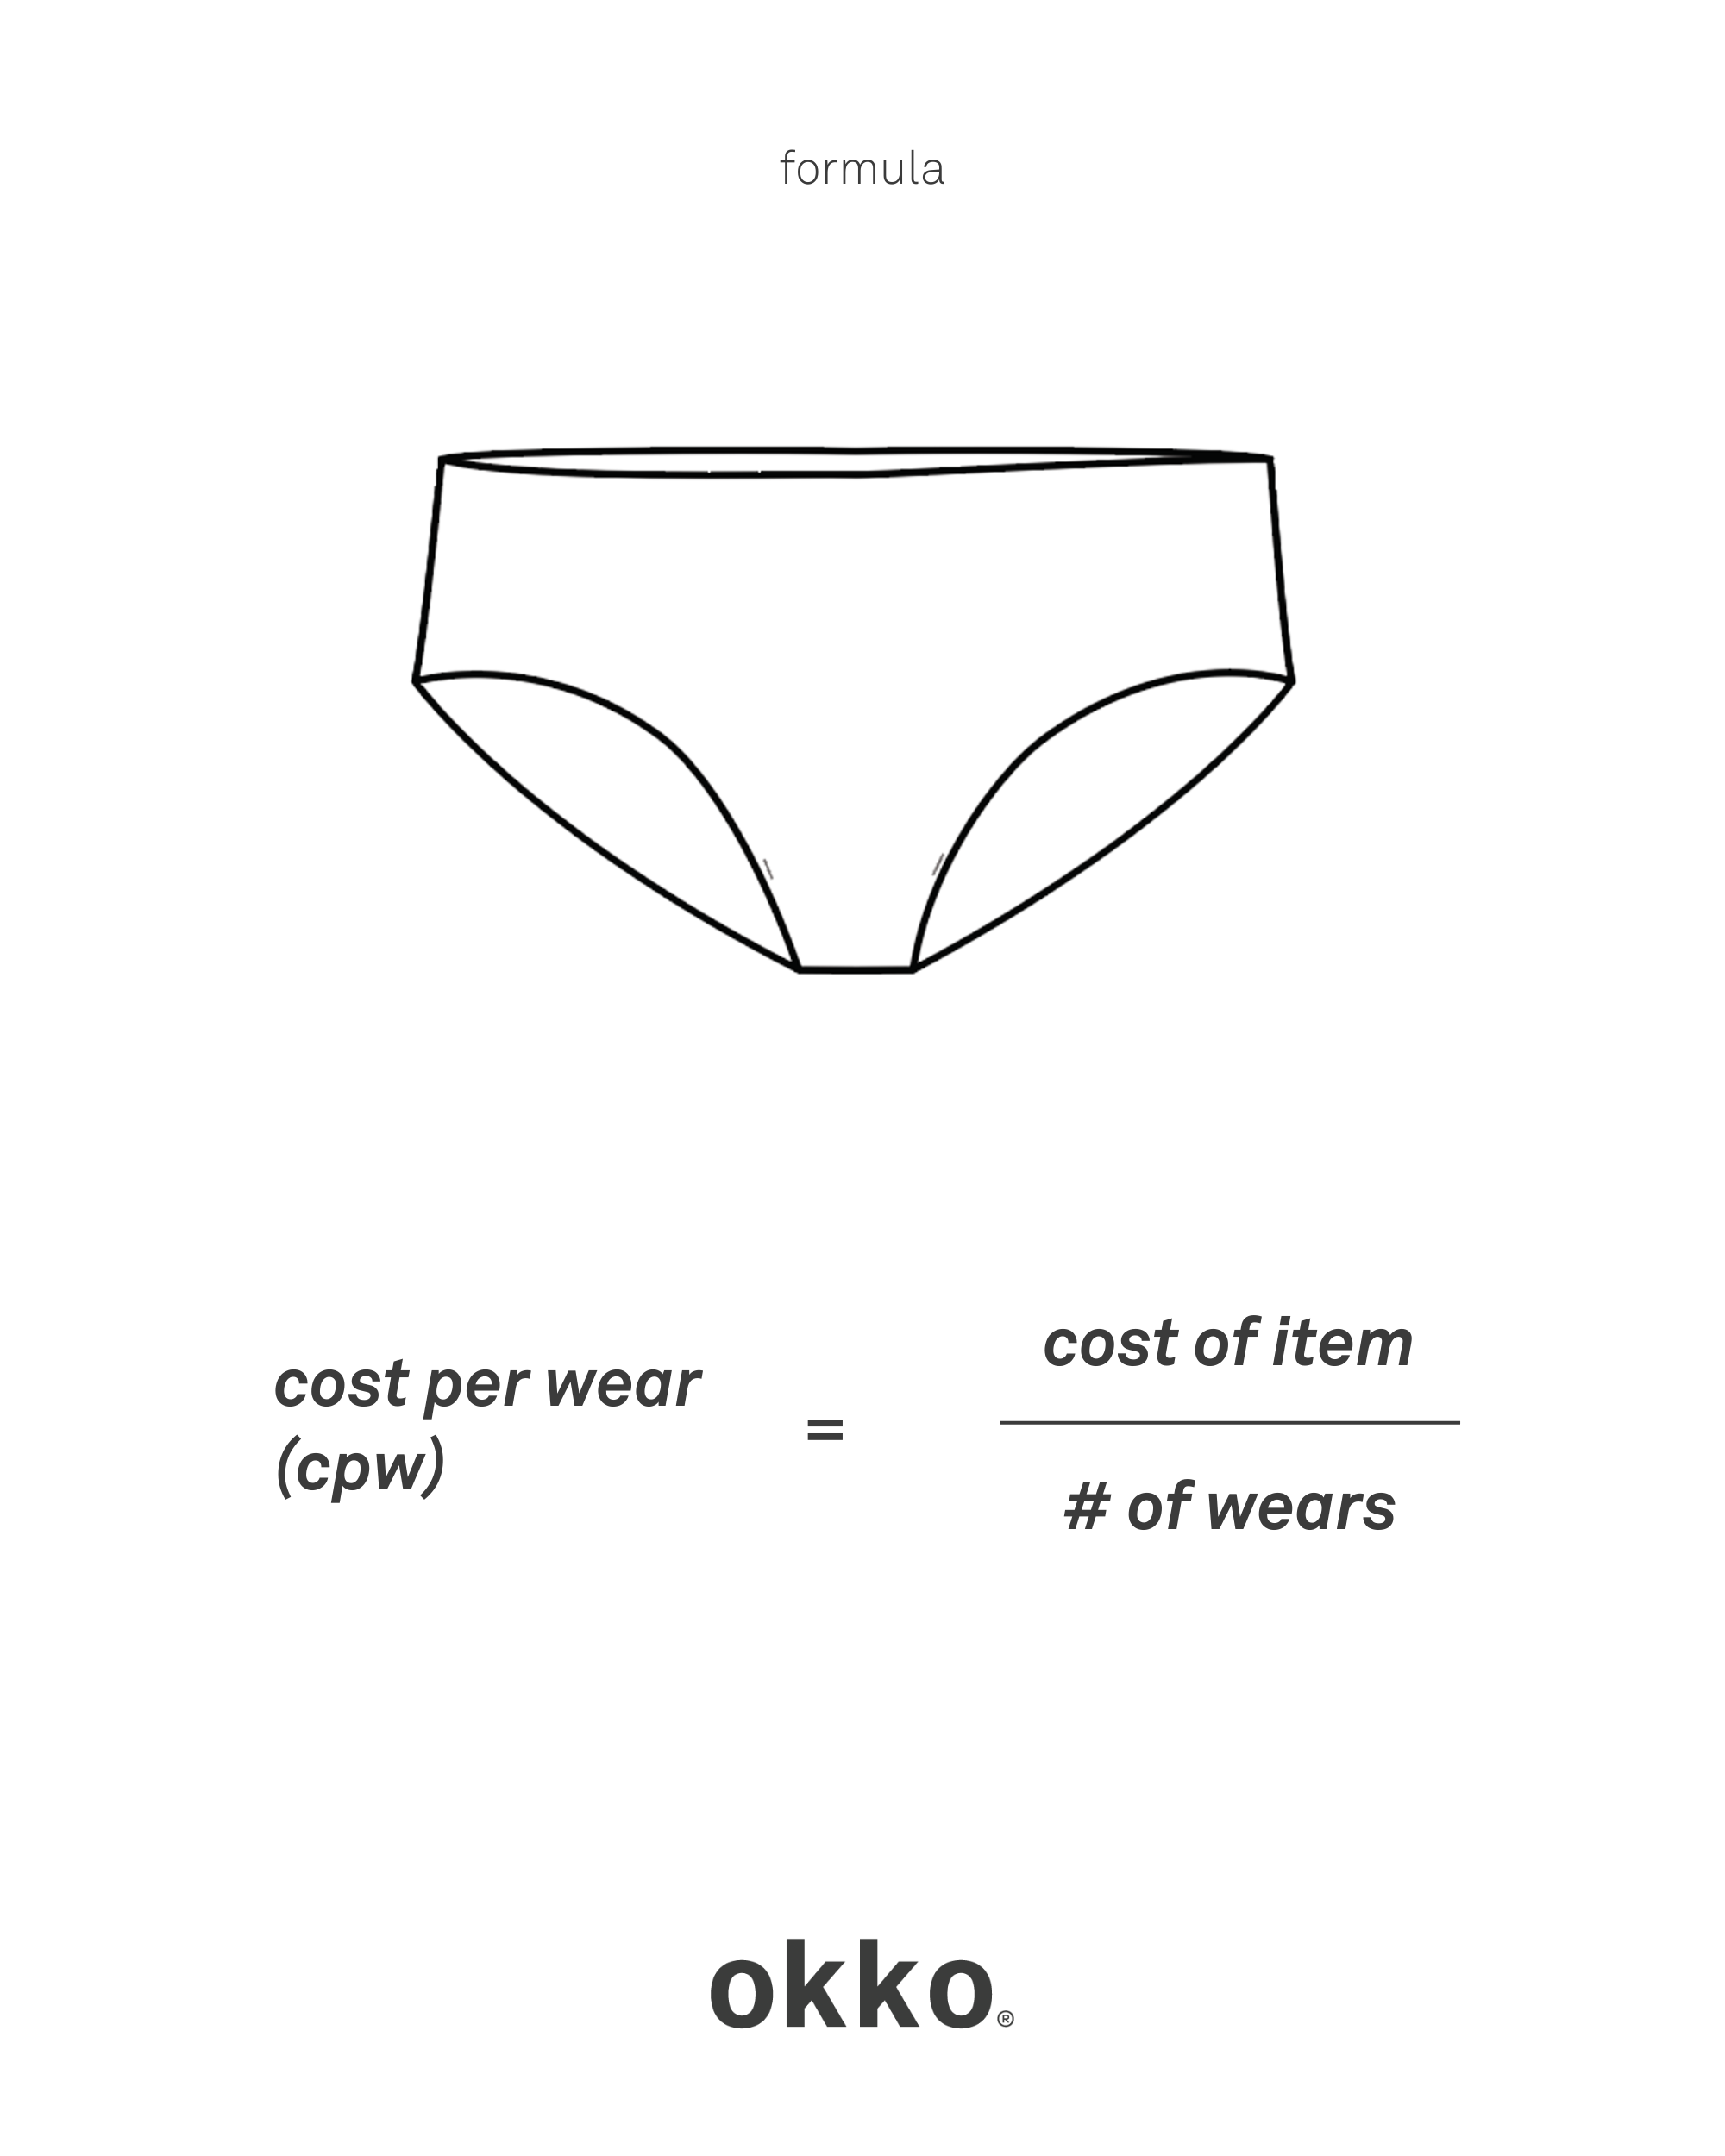 cost per wear calculation